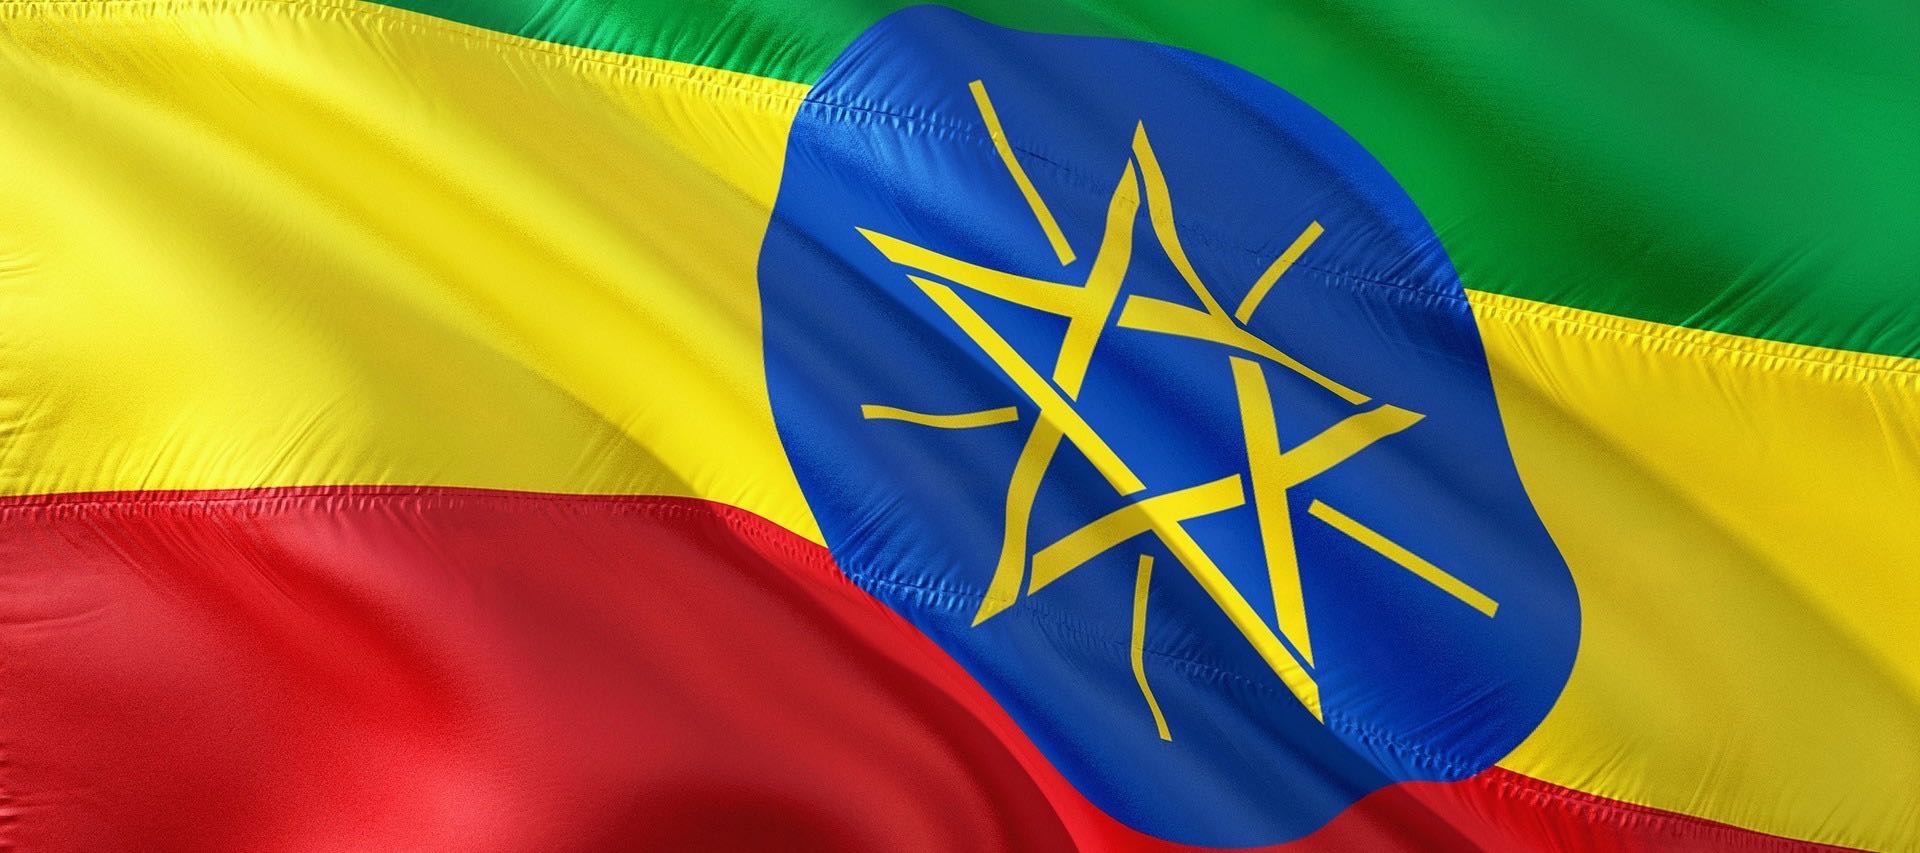 Drapeau Ethiopie avec couleurs panafricaines